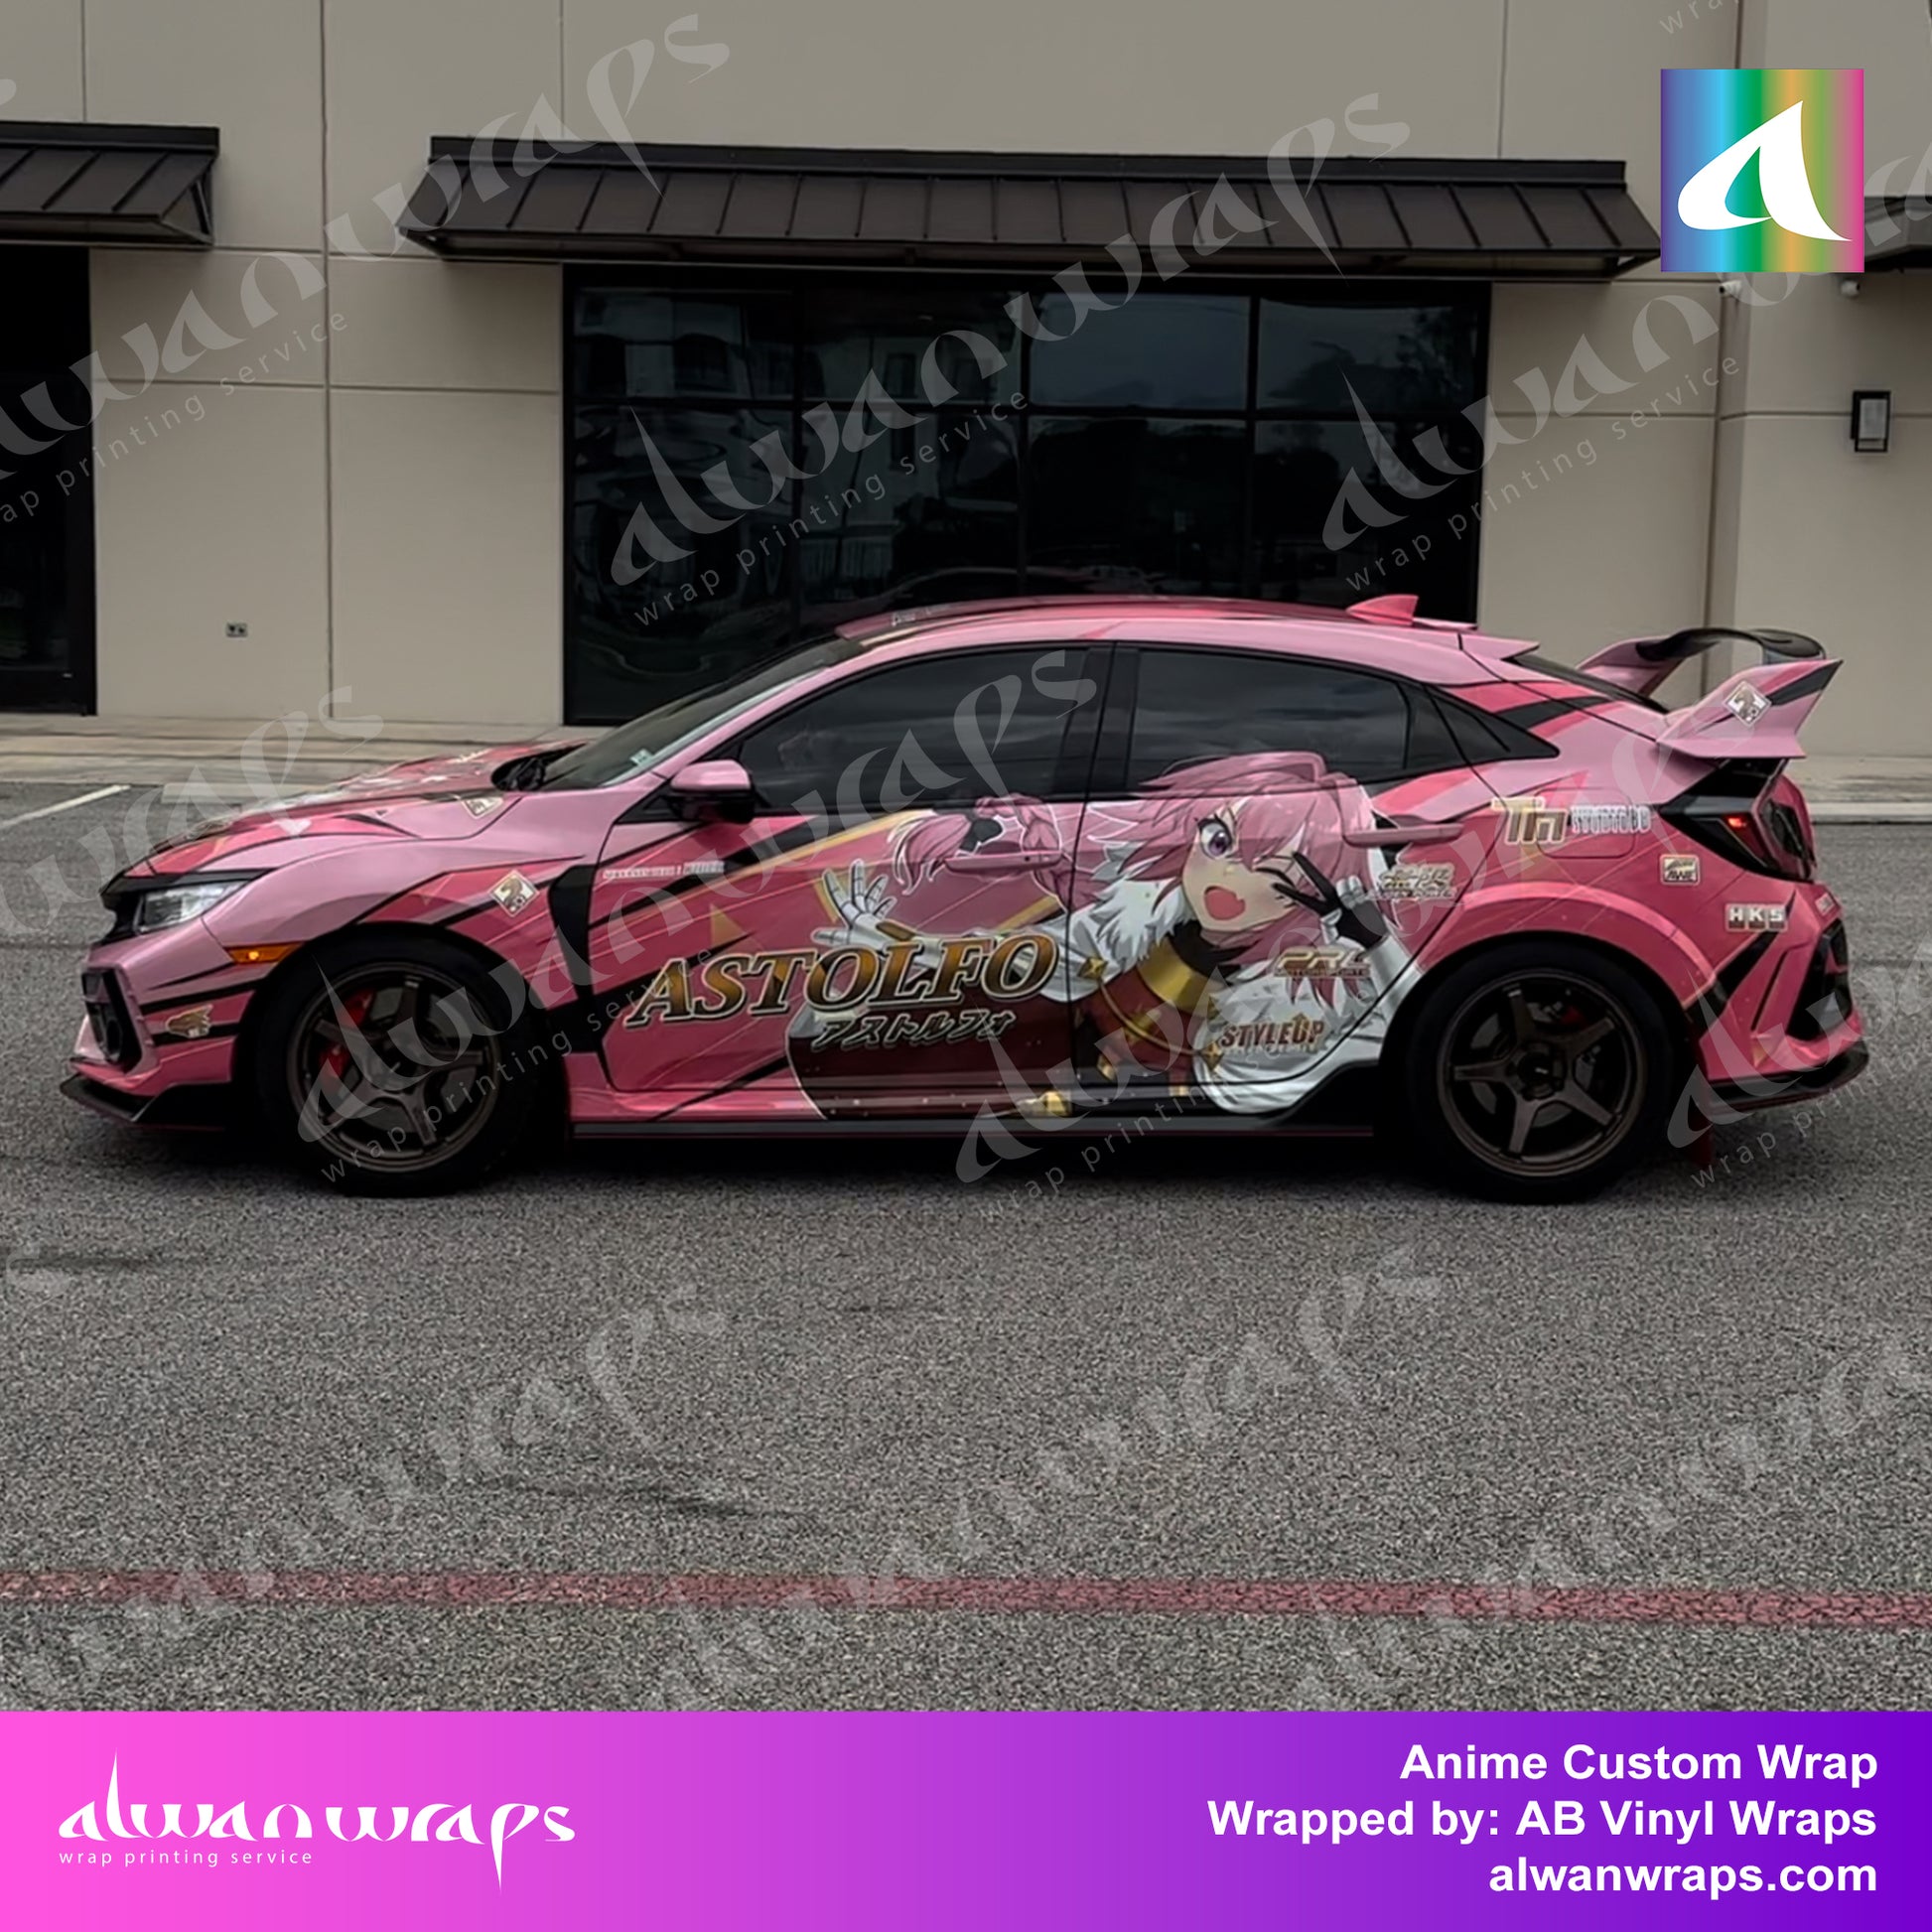 Anime car wrap